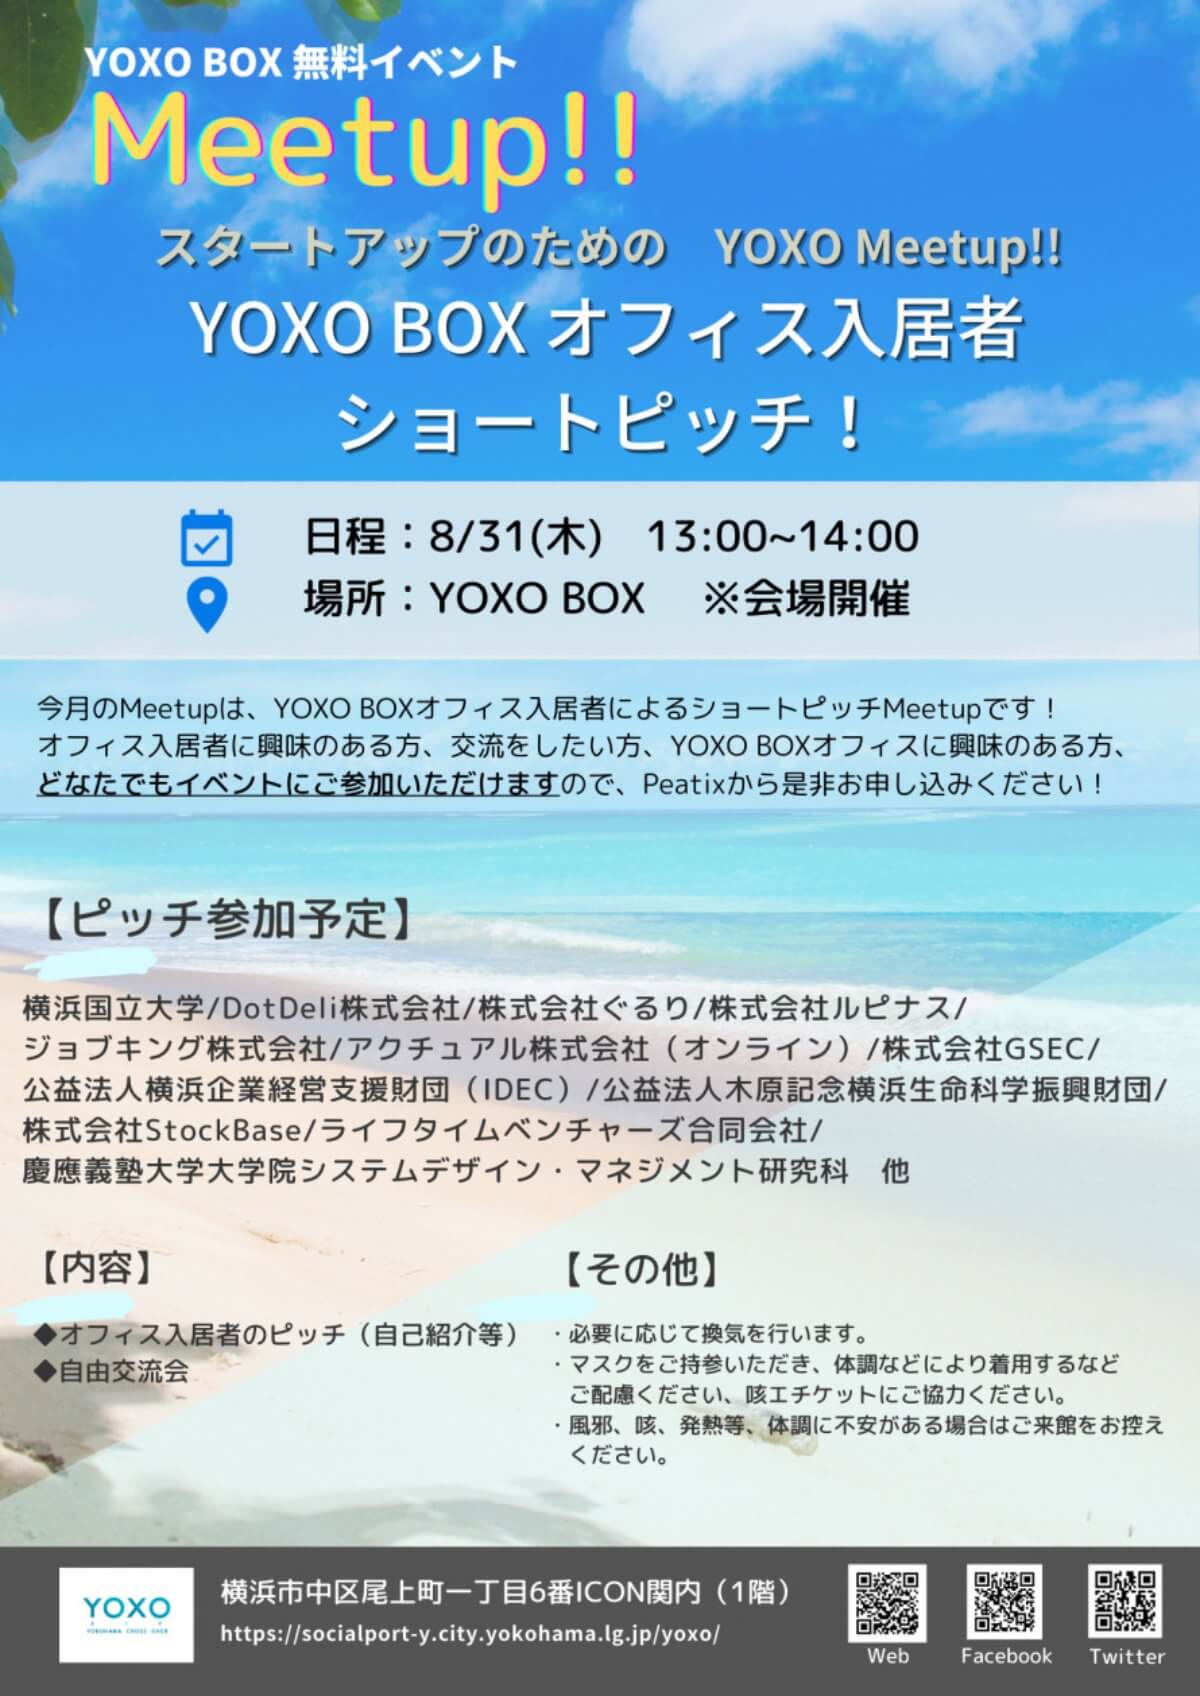 【8/31】スタートアップのためのMeetup!!「YOXO BOX オフィス入居者ショートピッチ！」